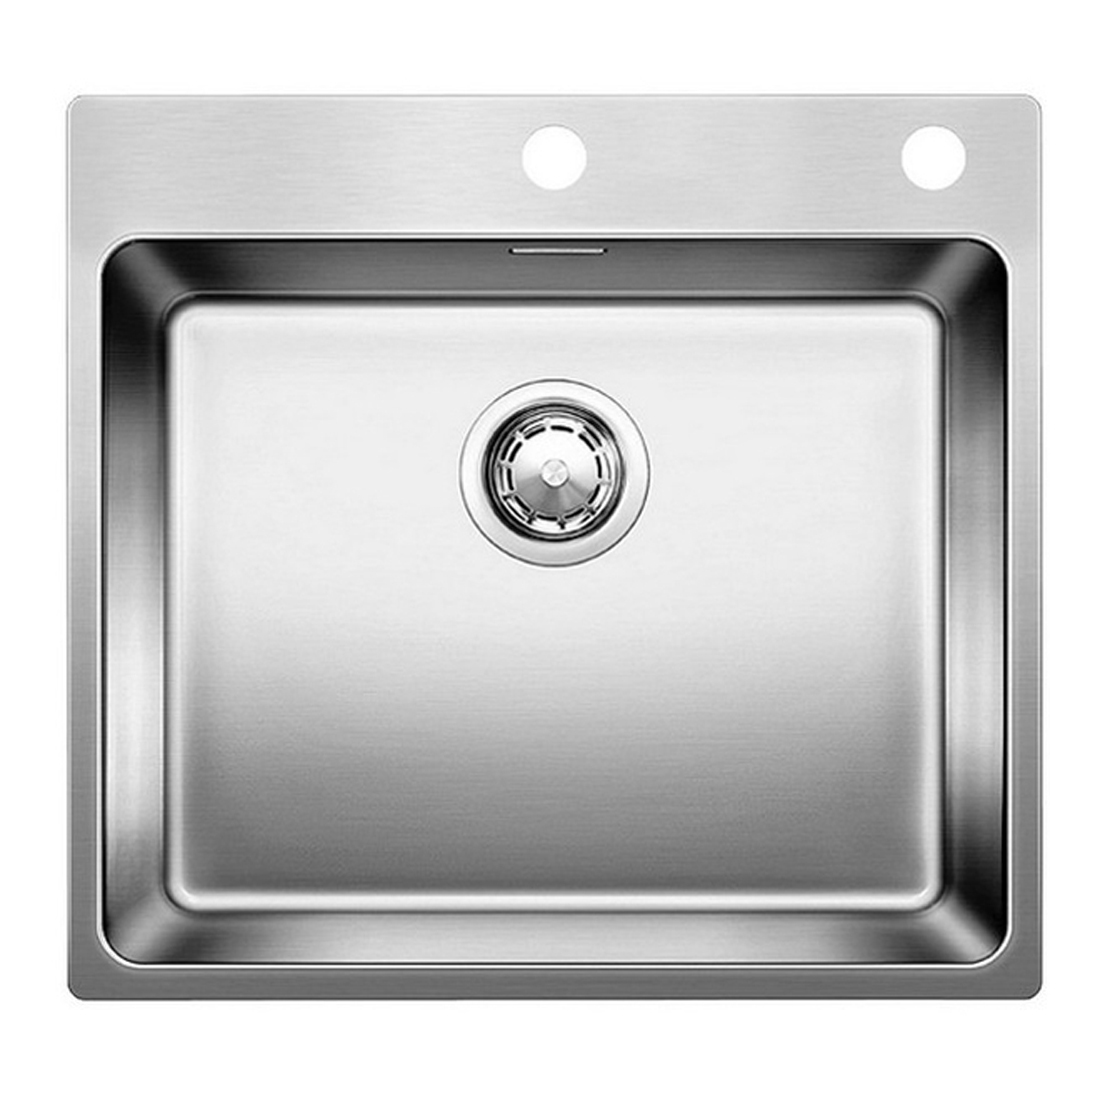 Кухонная мойка Blanco Etagon 500-IF/А полированная сталь кухонная мойка blanco delta if полированная сталь